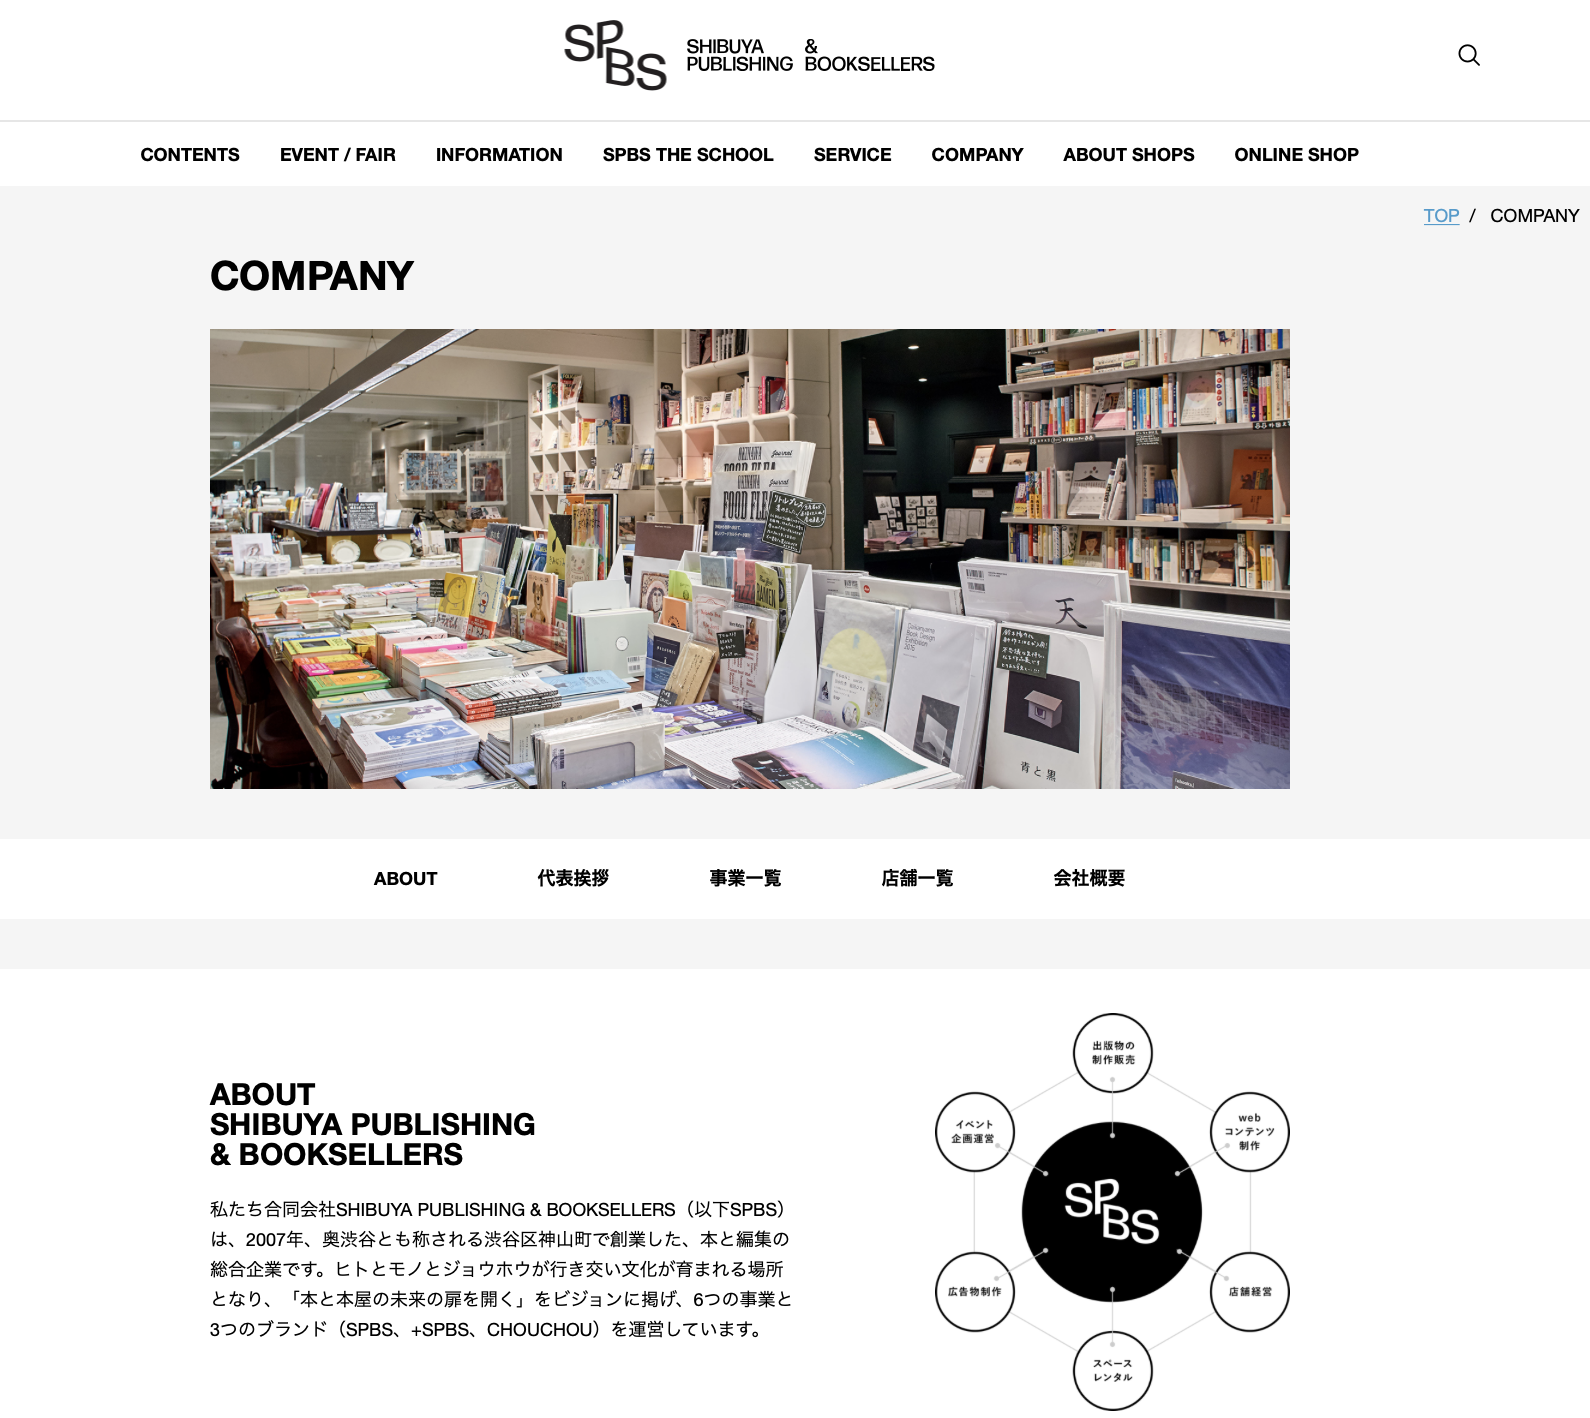 合同会社 SHIBUYA PUBLISHING & BOOKSELLERSの合同会社SHIBUYA PUBLISHING & BOOKSELLERS:編集プロダクションサービス